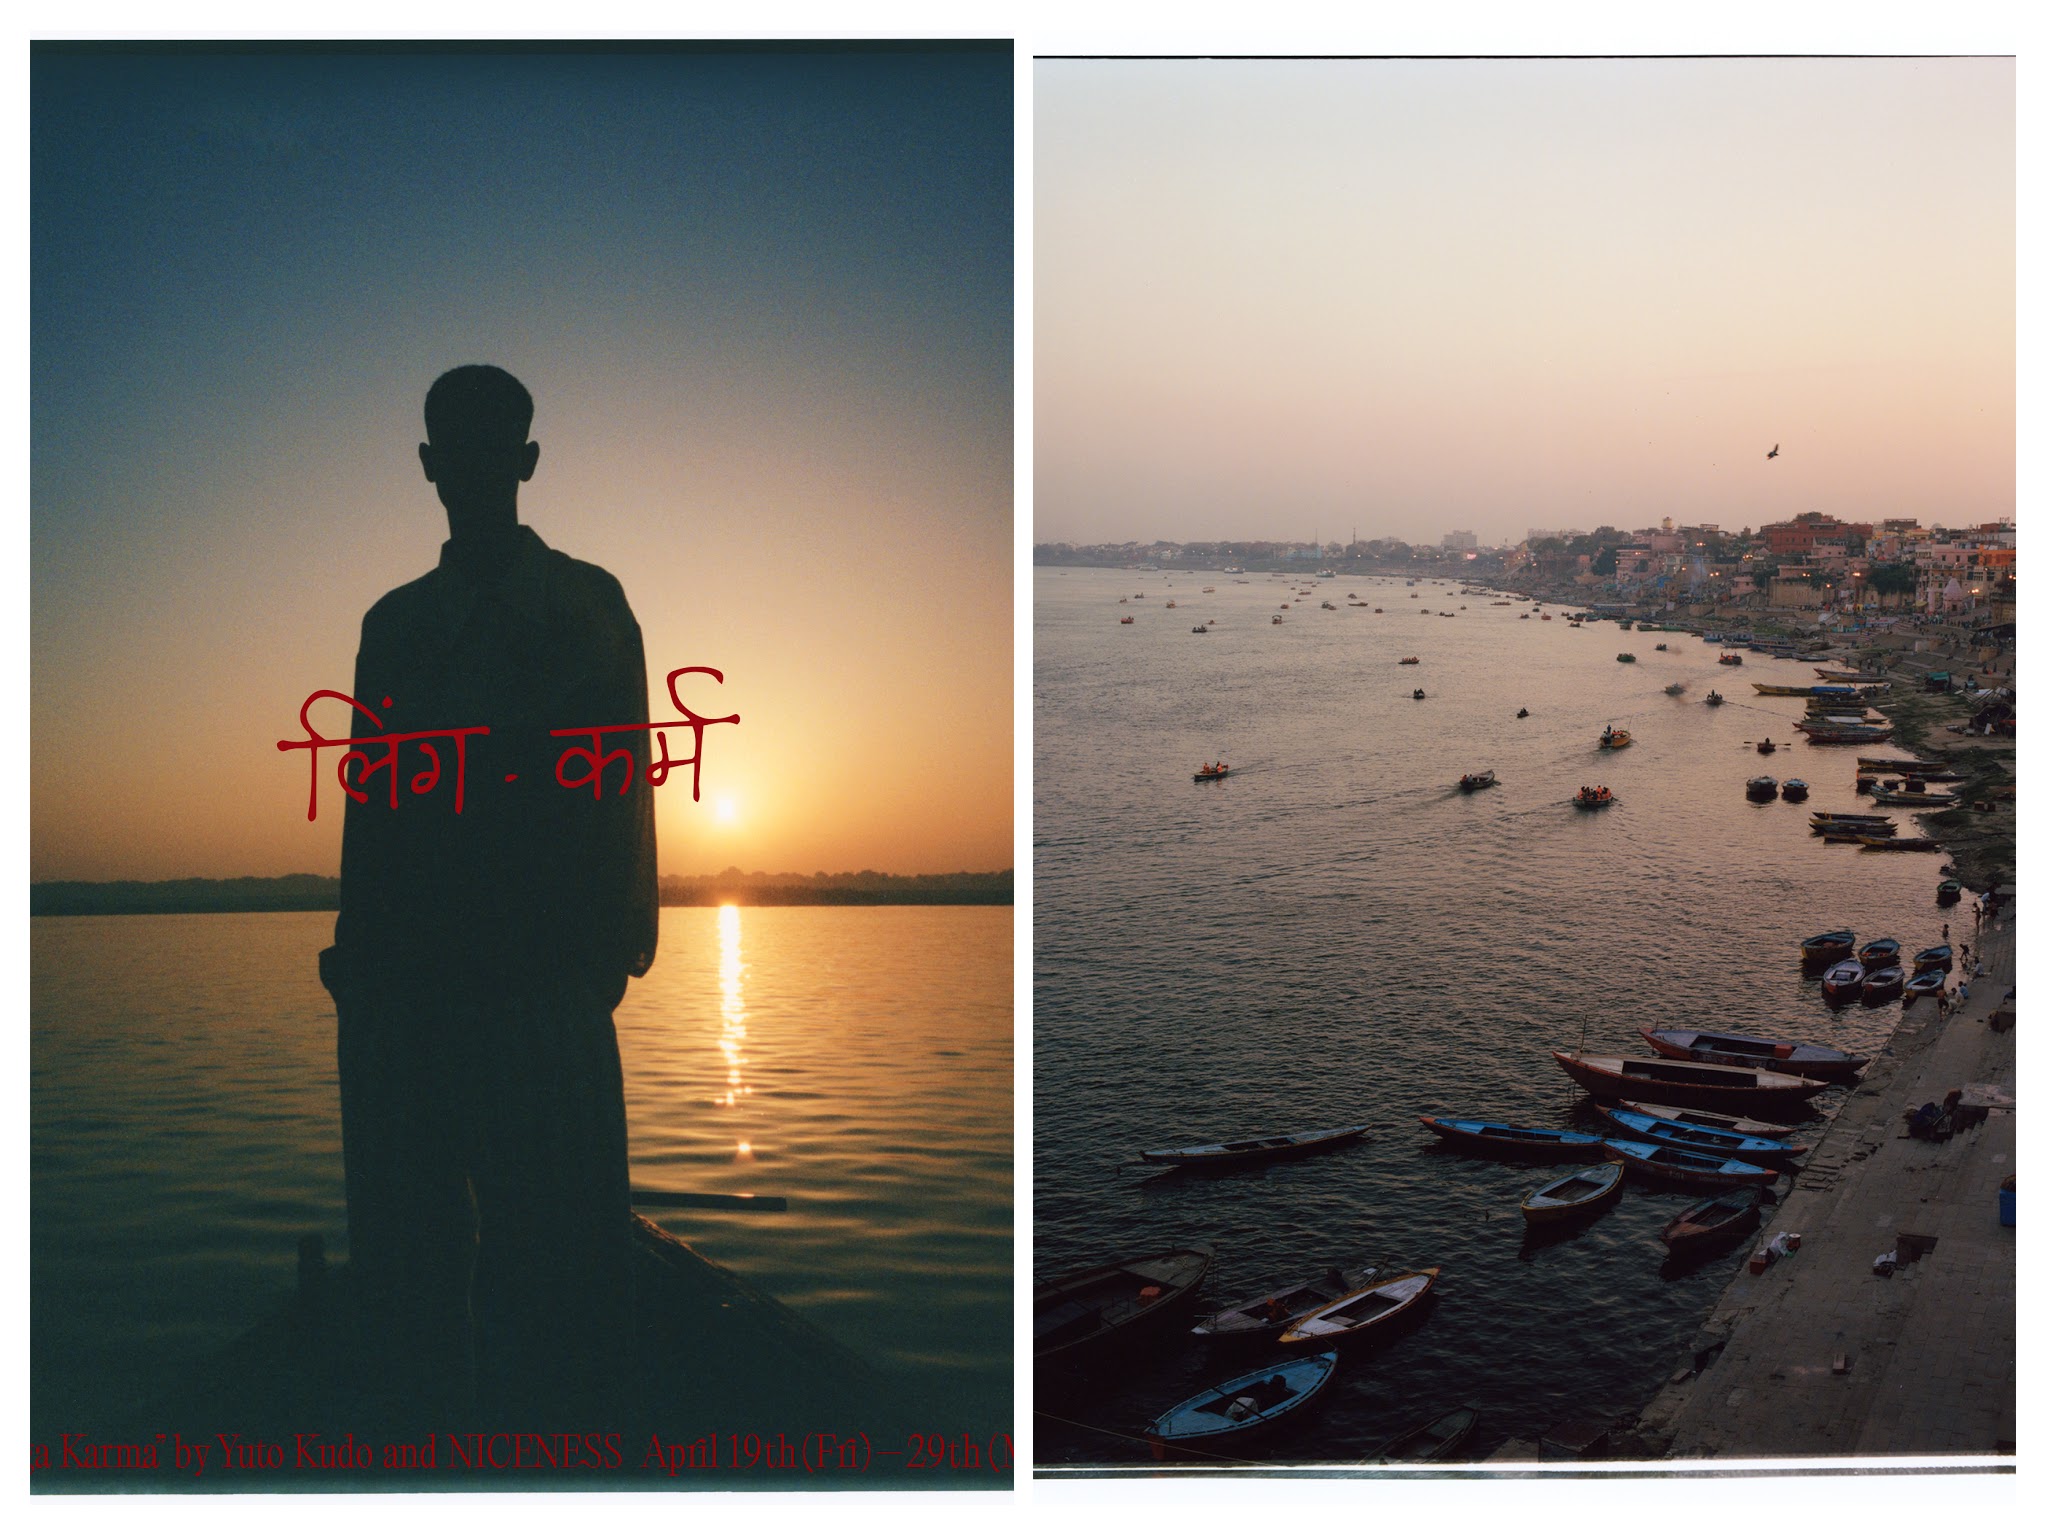 工藤佑斗が記録する、インド ヴァーラーナシーの街。ナイスネス24SSコレクションと連動した写真展“Liṅga Karma”が開催中です。